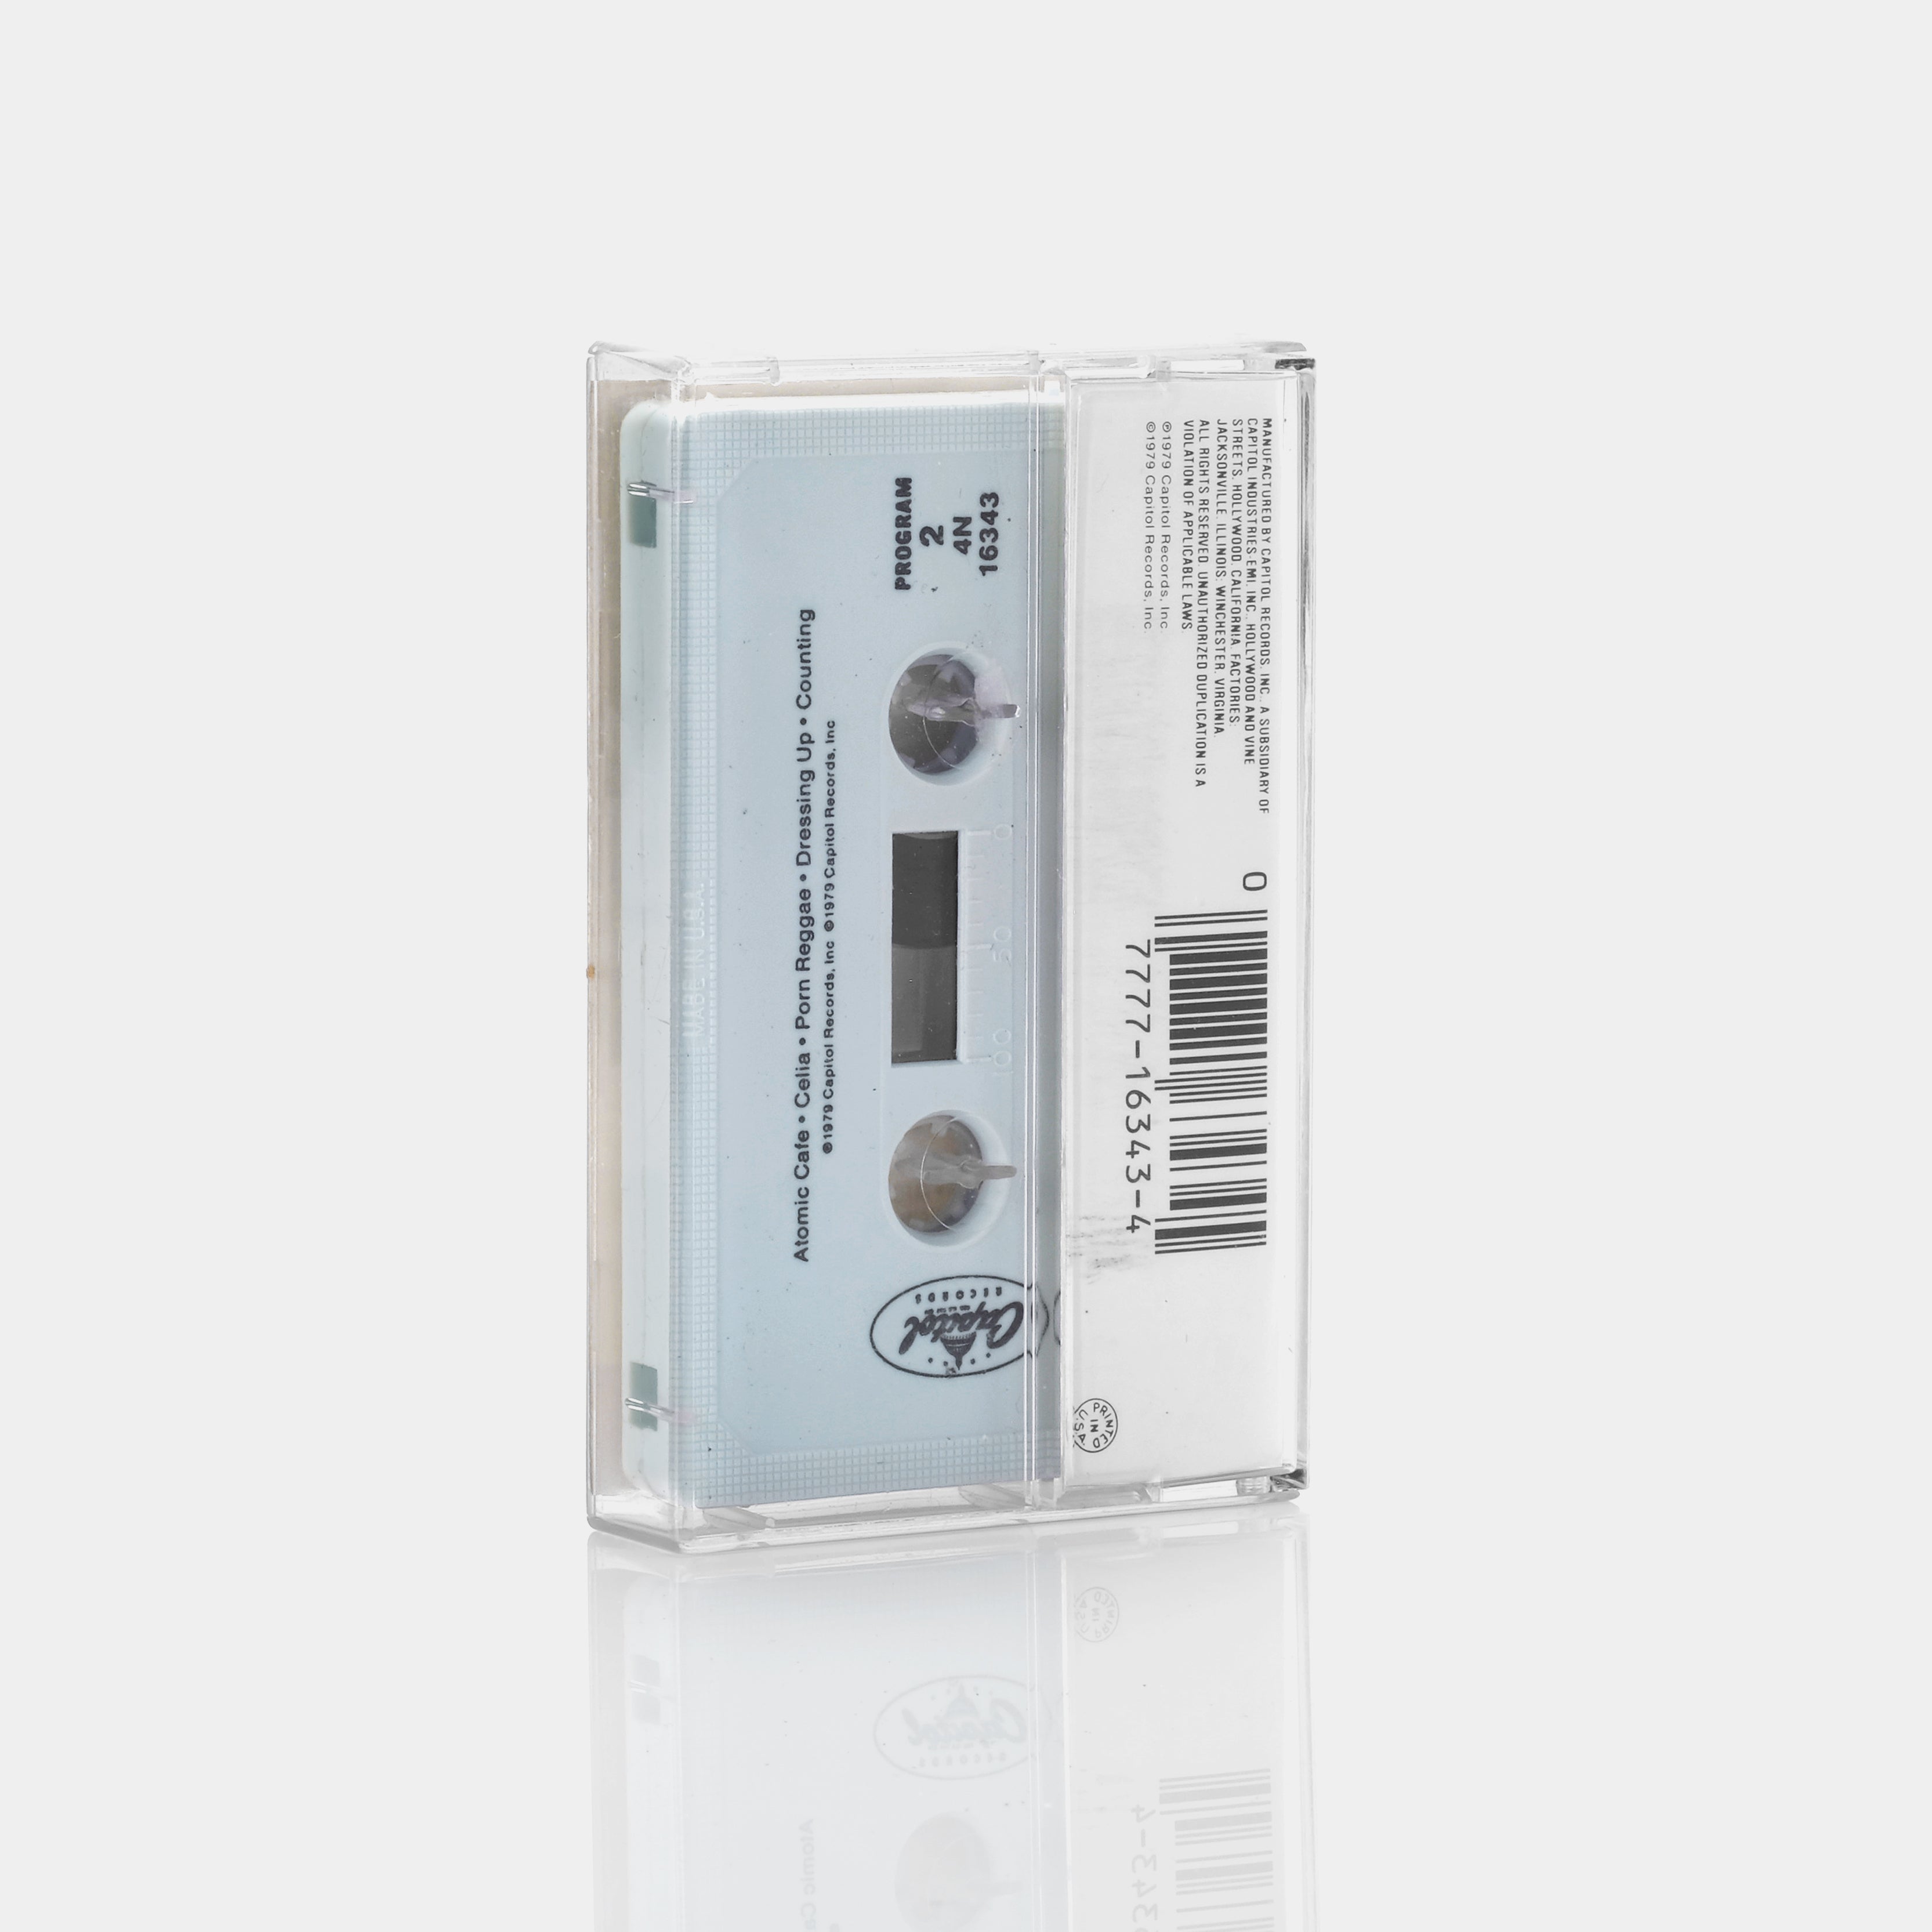 The Motels - The Motels Cassette Tape